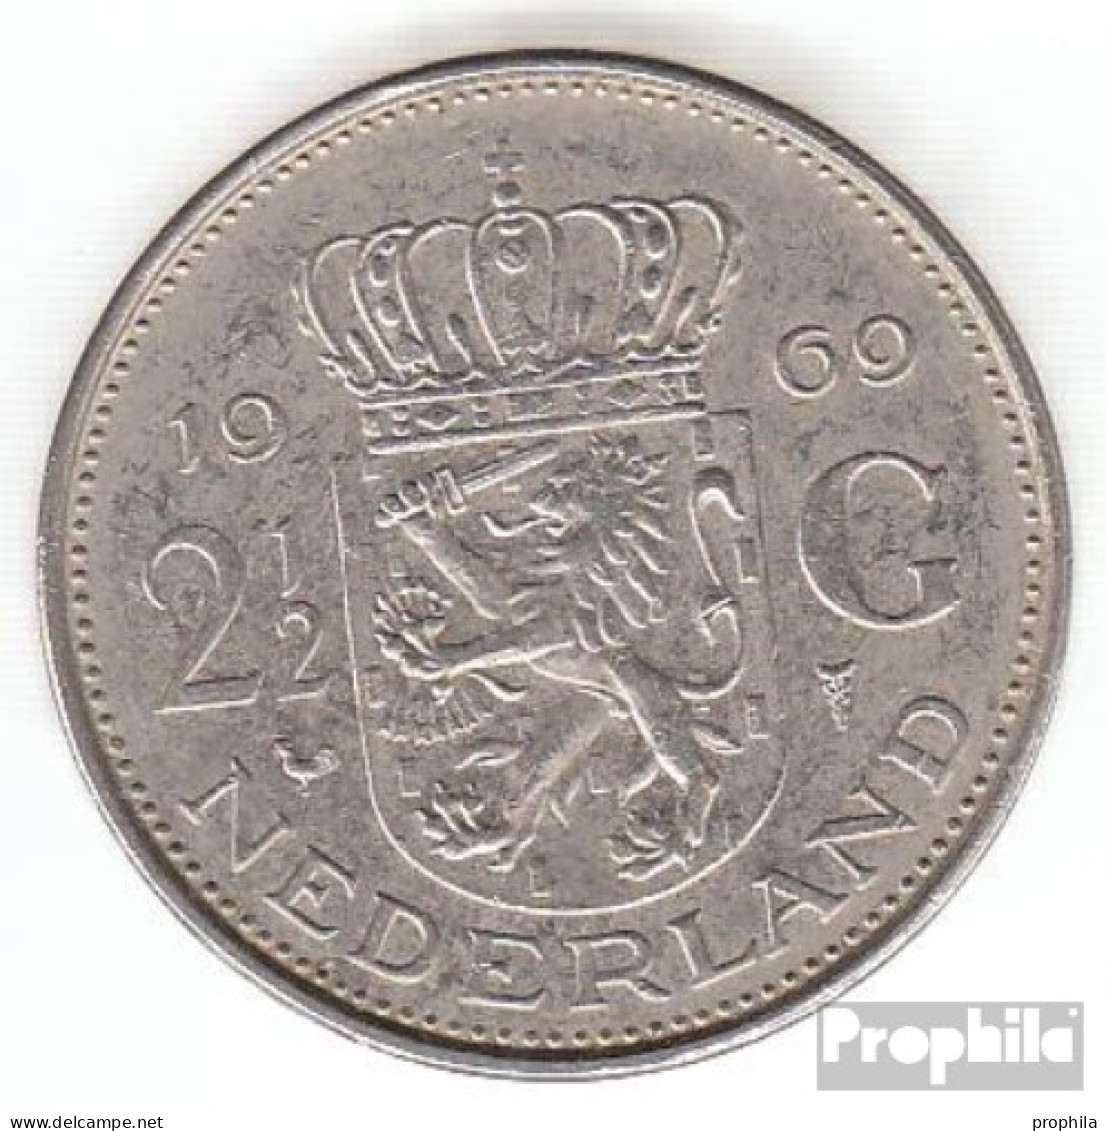 Niederlande KM-Nr. : 191 1969 Hahn Sehr Schön Nickel Sehr Schön 1969 2-1/2 Gulden Juliana - 2 1/2 Florín Holandés (Gulden)